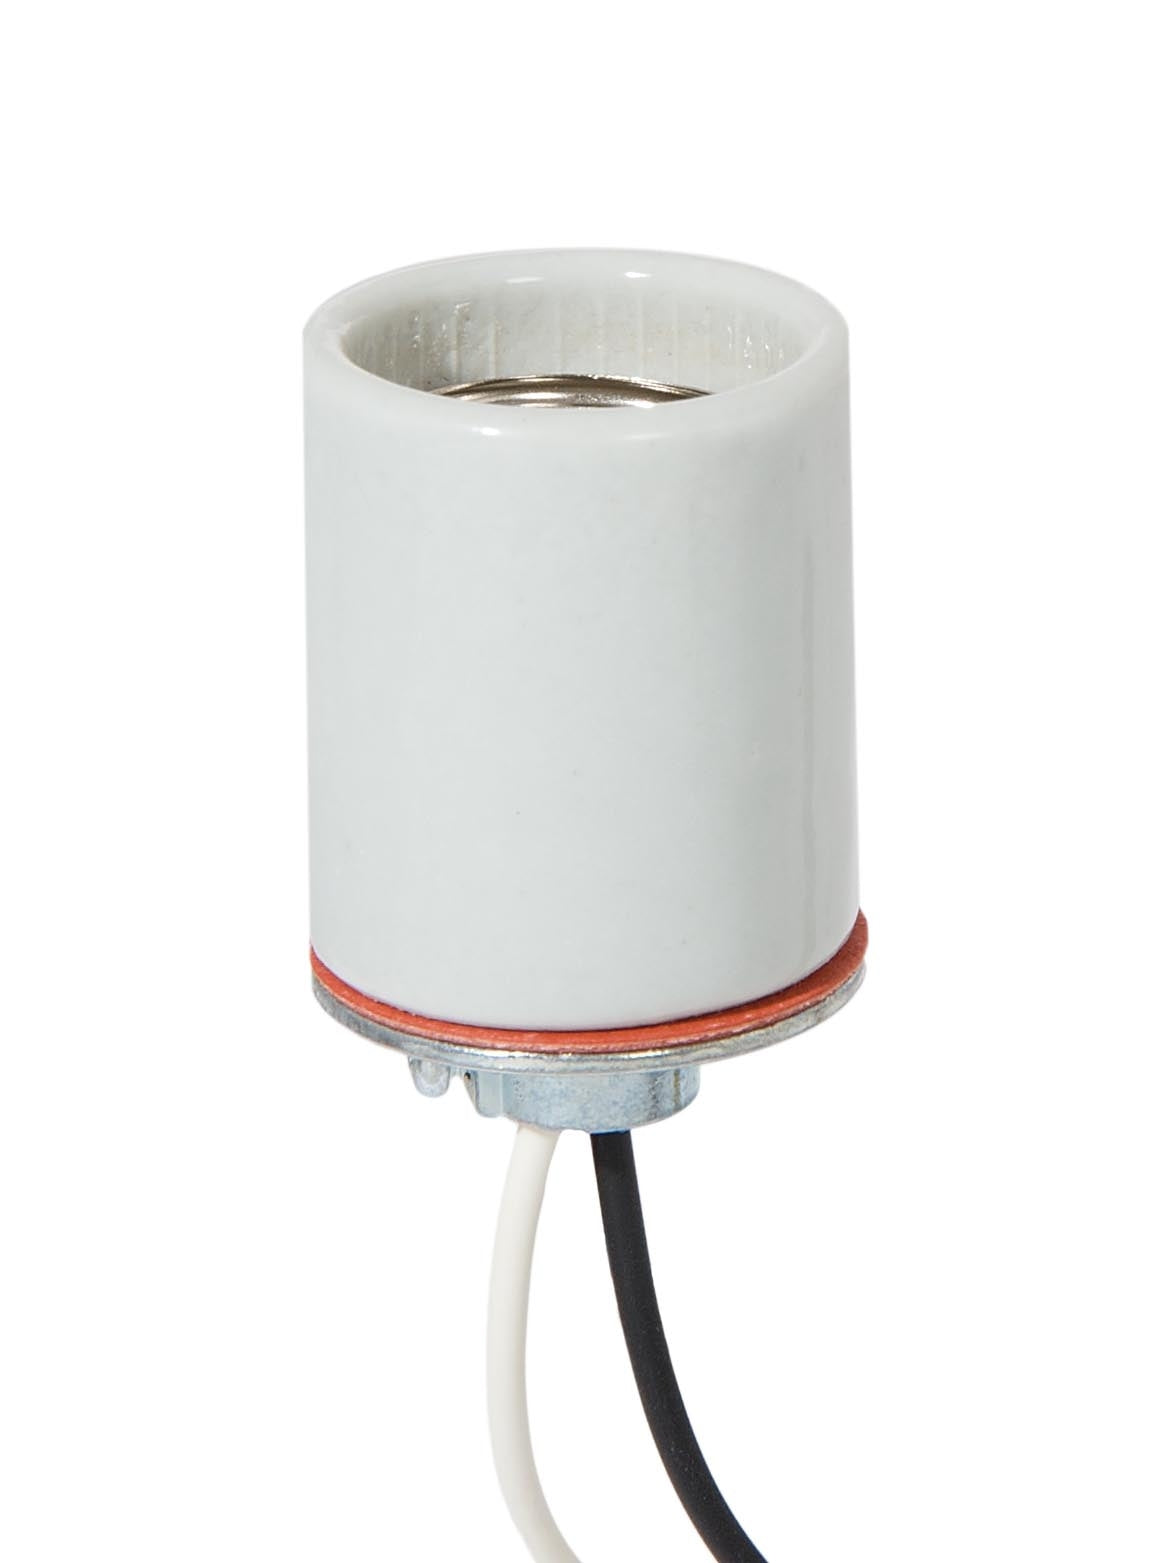 Keyless Glazed Porcelain E-26 Base Lamp Socket, Wire Leads, 1/8 IPS Metal Cap